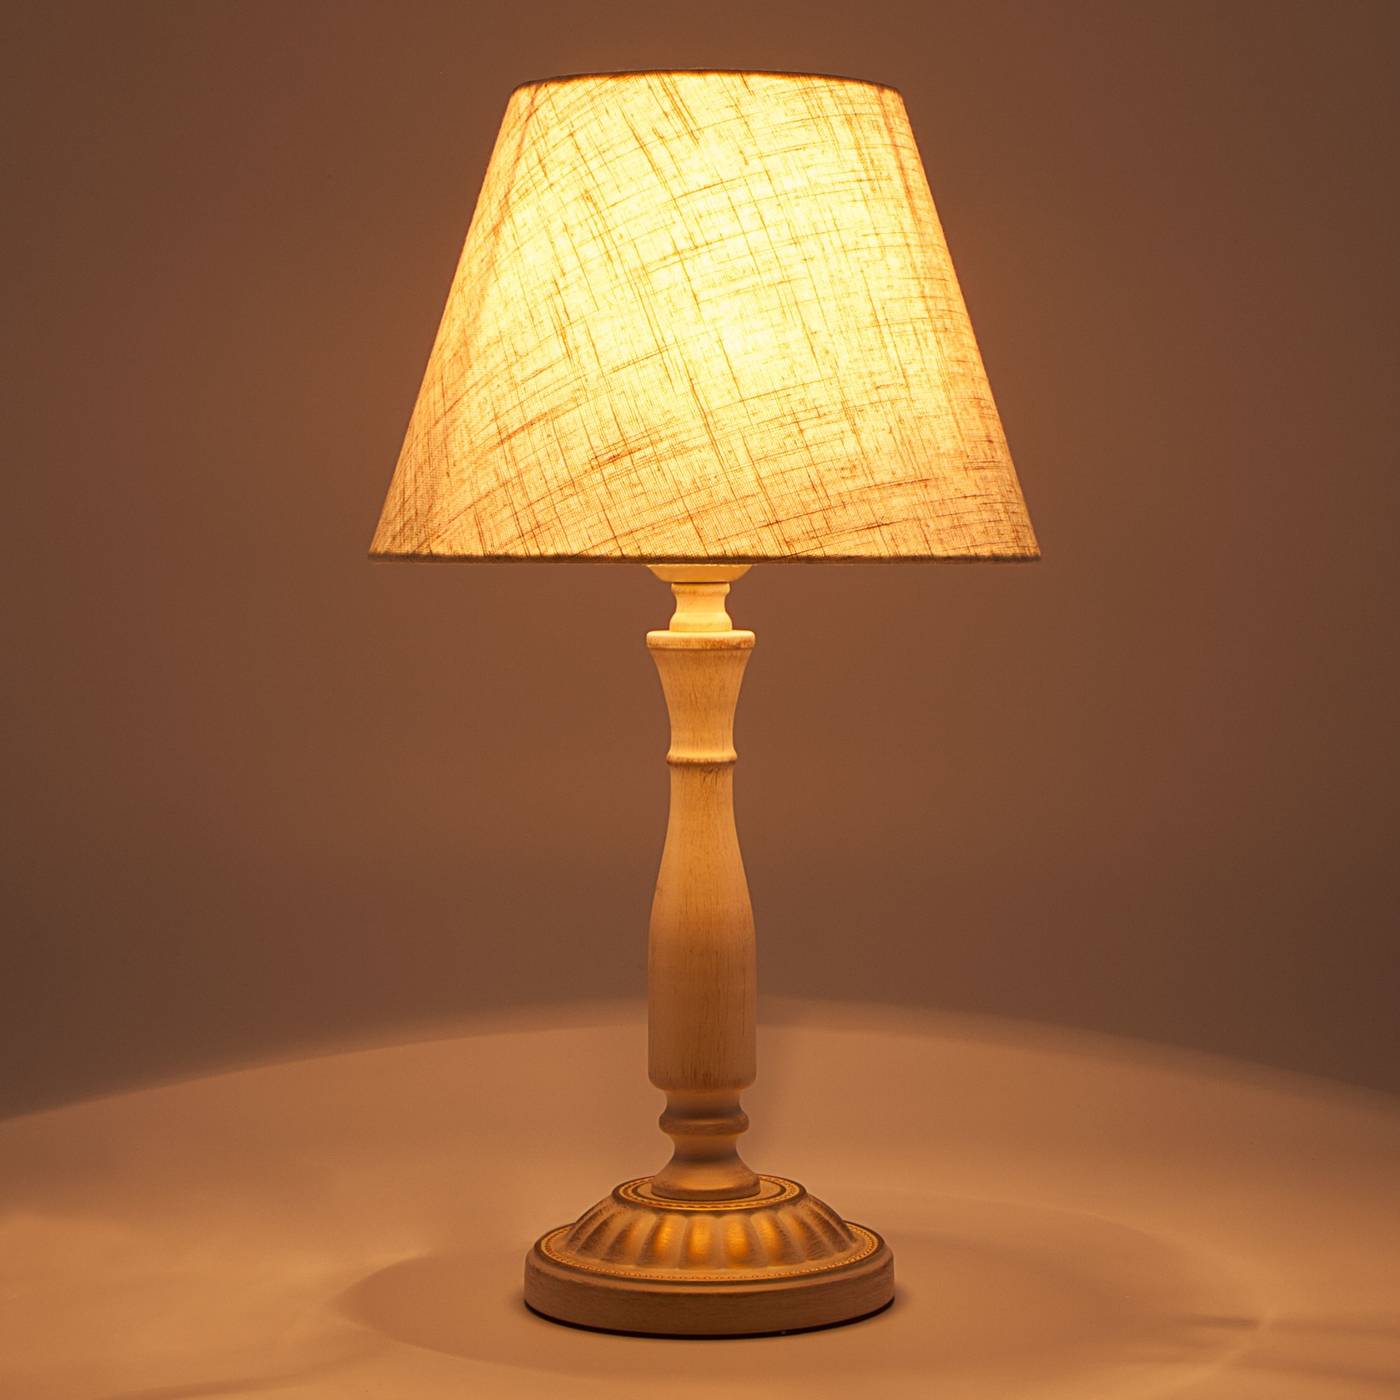 Настольные лампы в интерьере | красивые и стильные интерьеры на фото